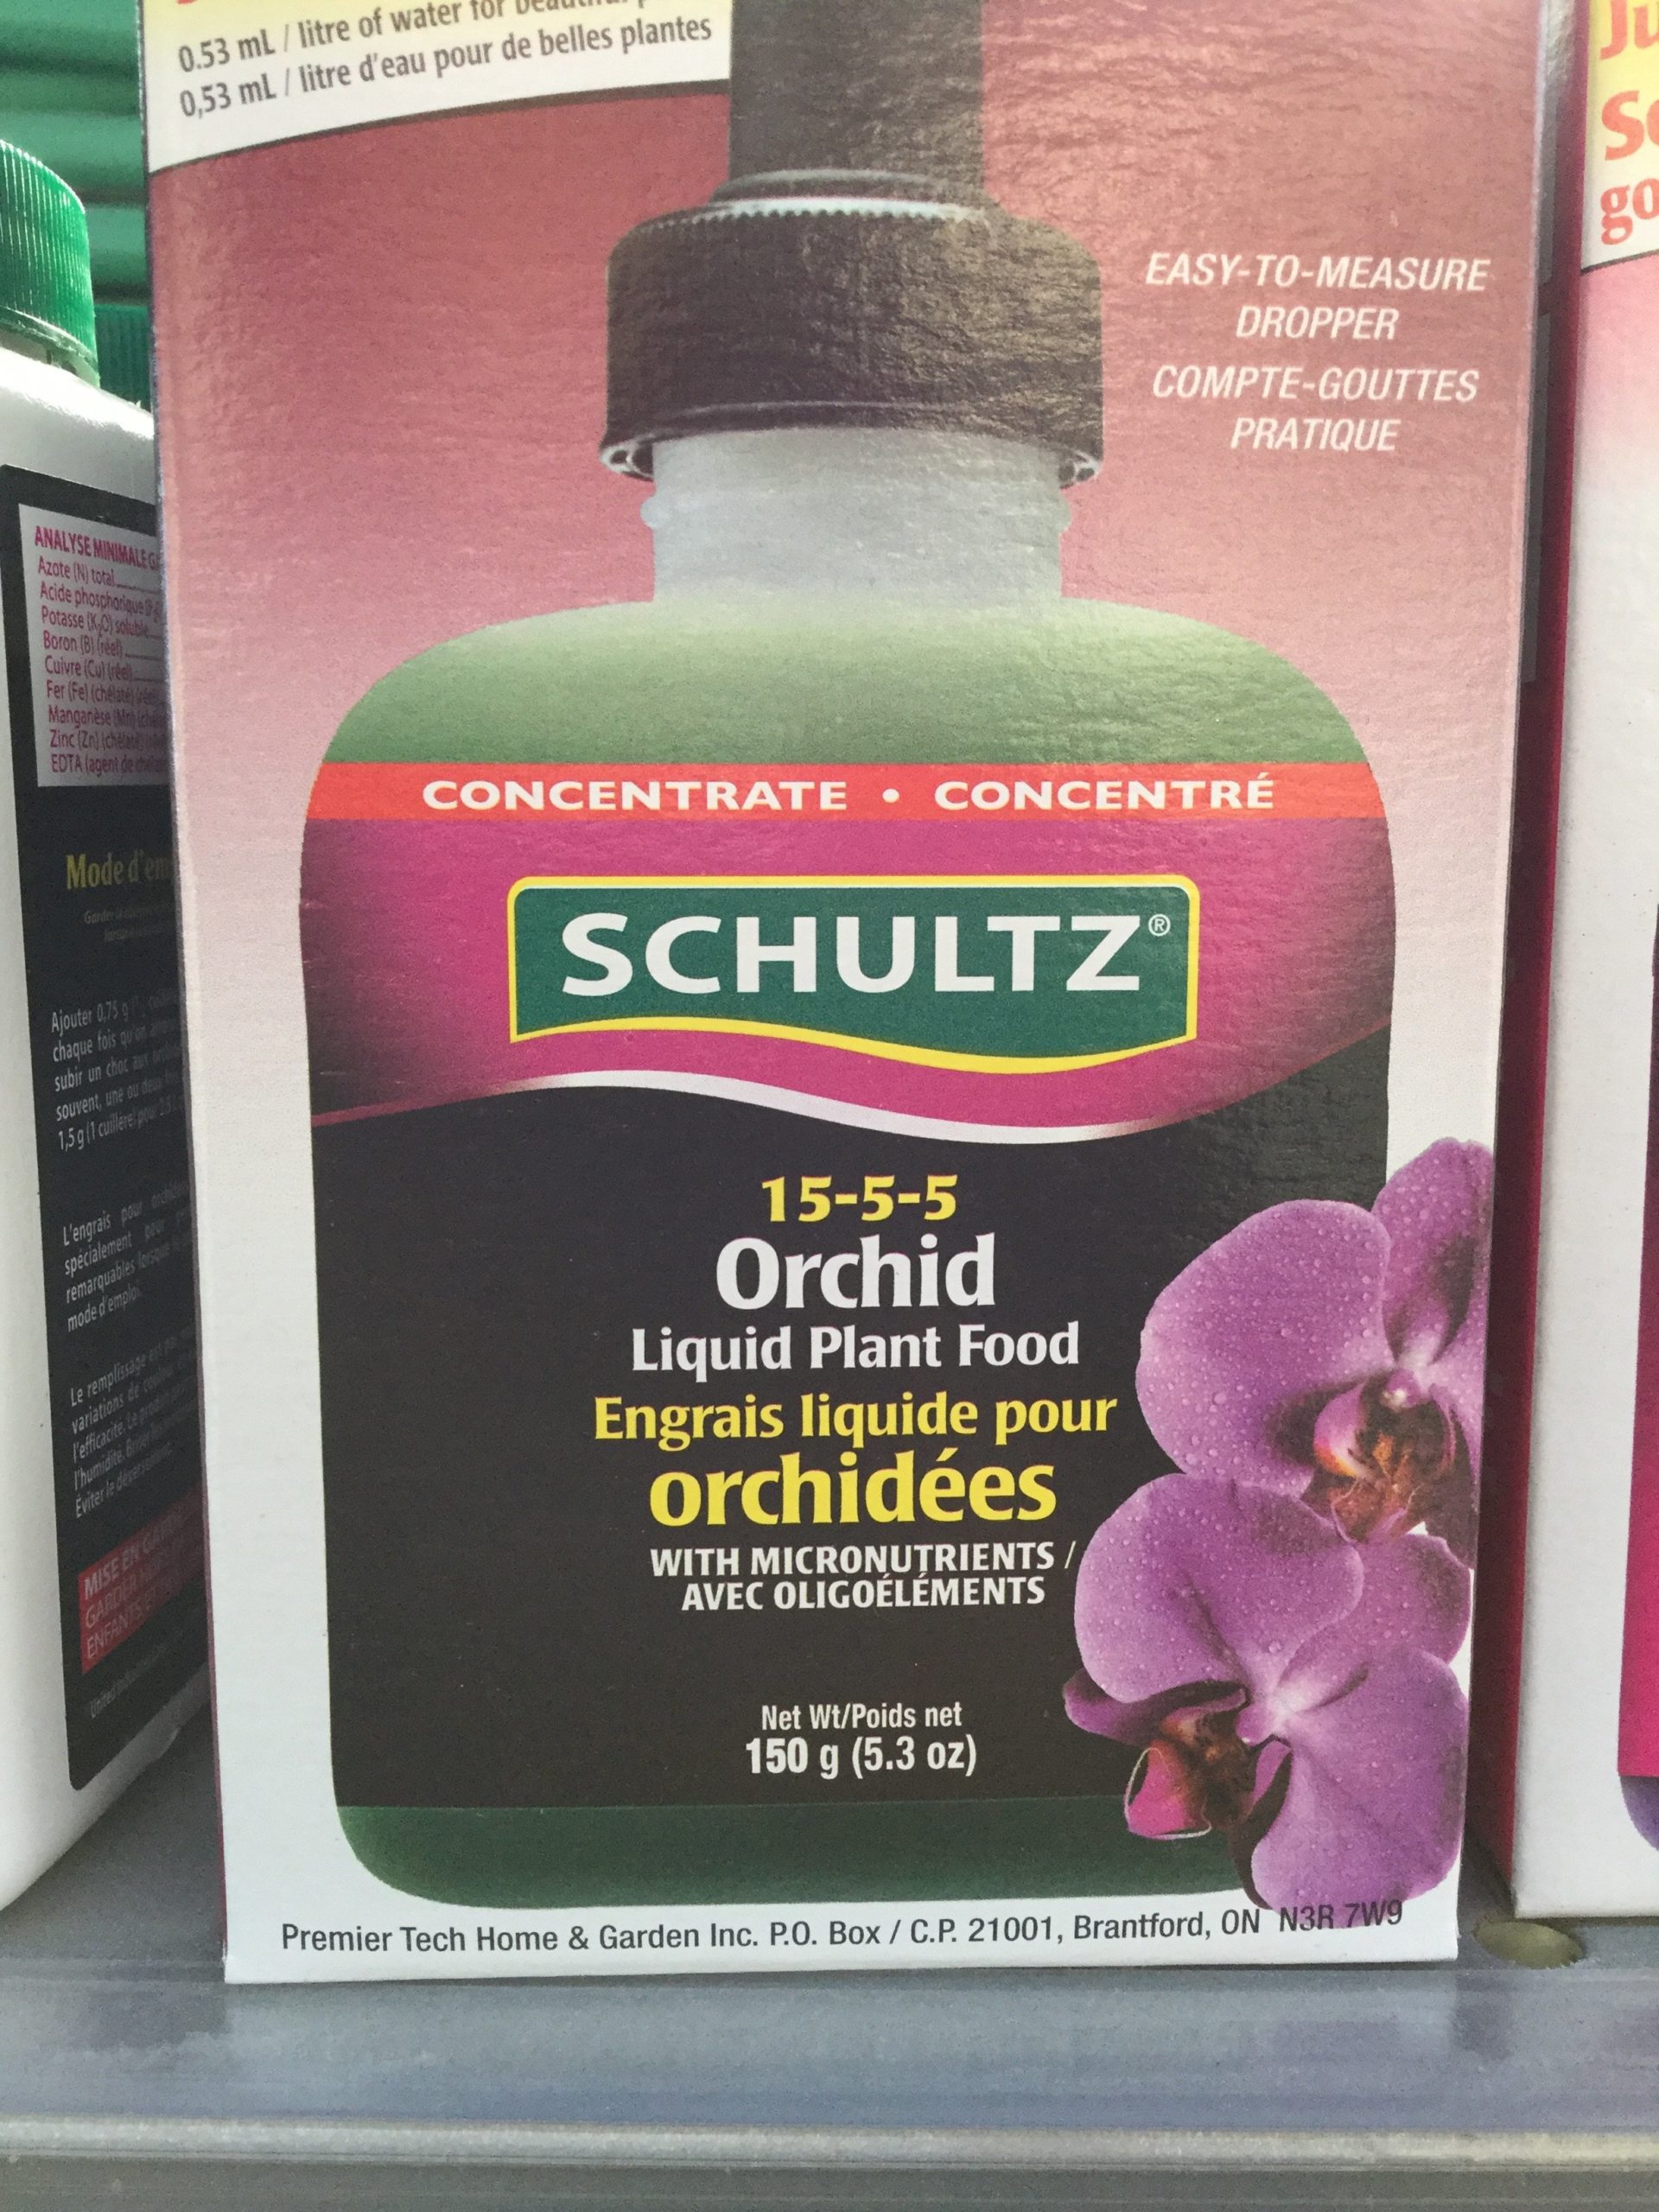 Engrais liquide pour orchidées 15-5-5